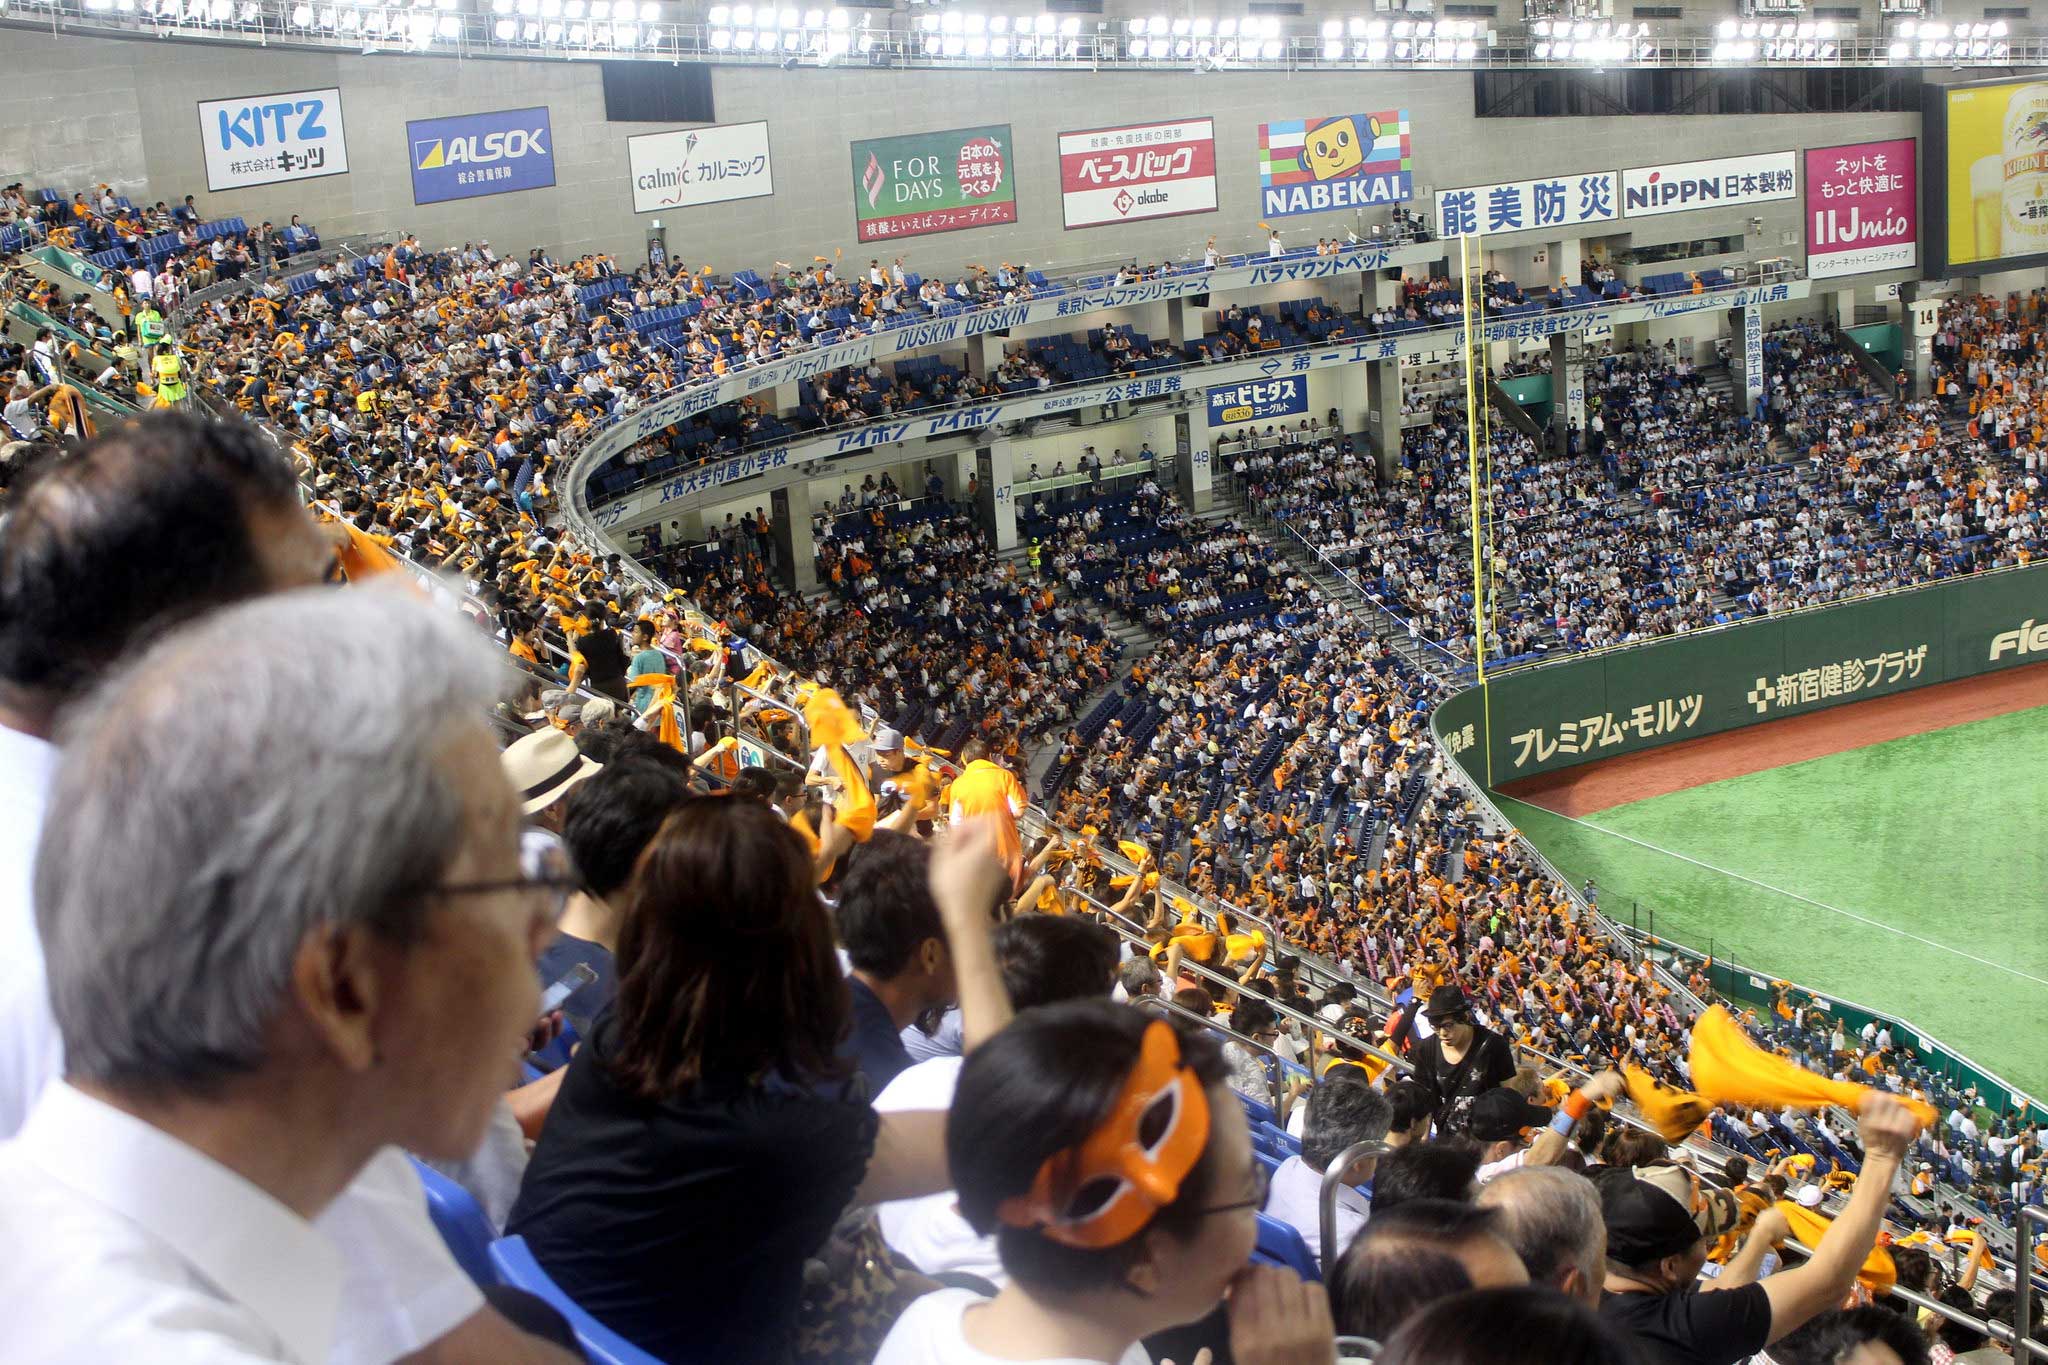 Descubra o jogo de beisebol gigante em Tóquio Dome, Japão